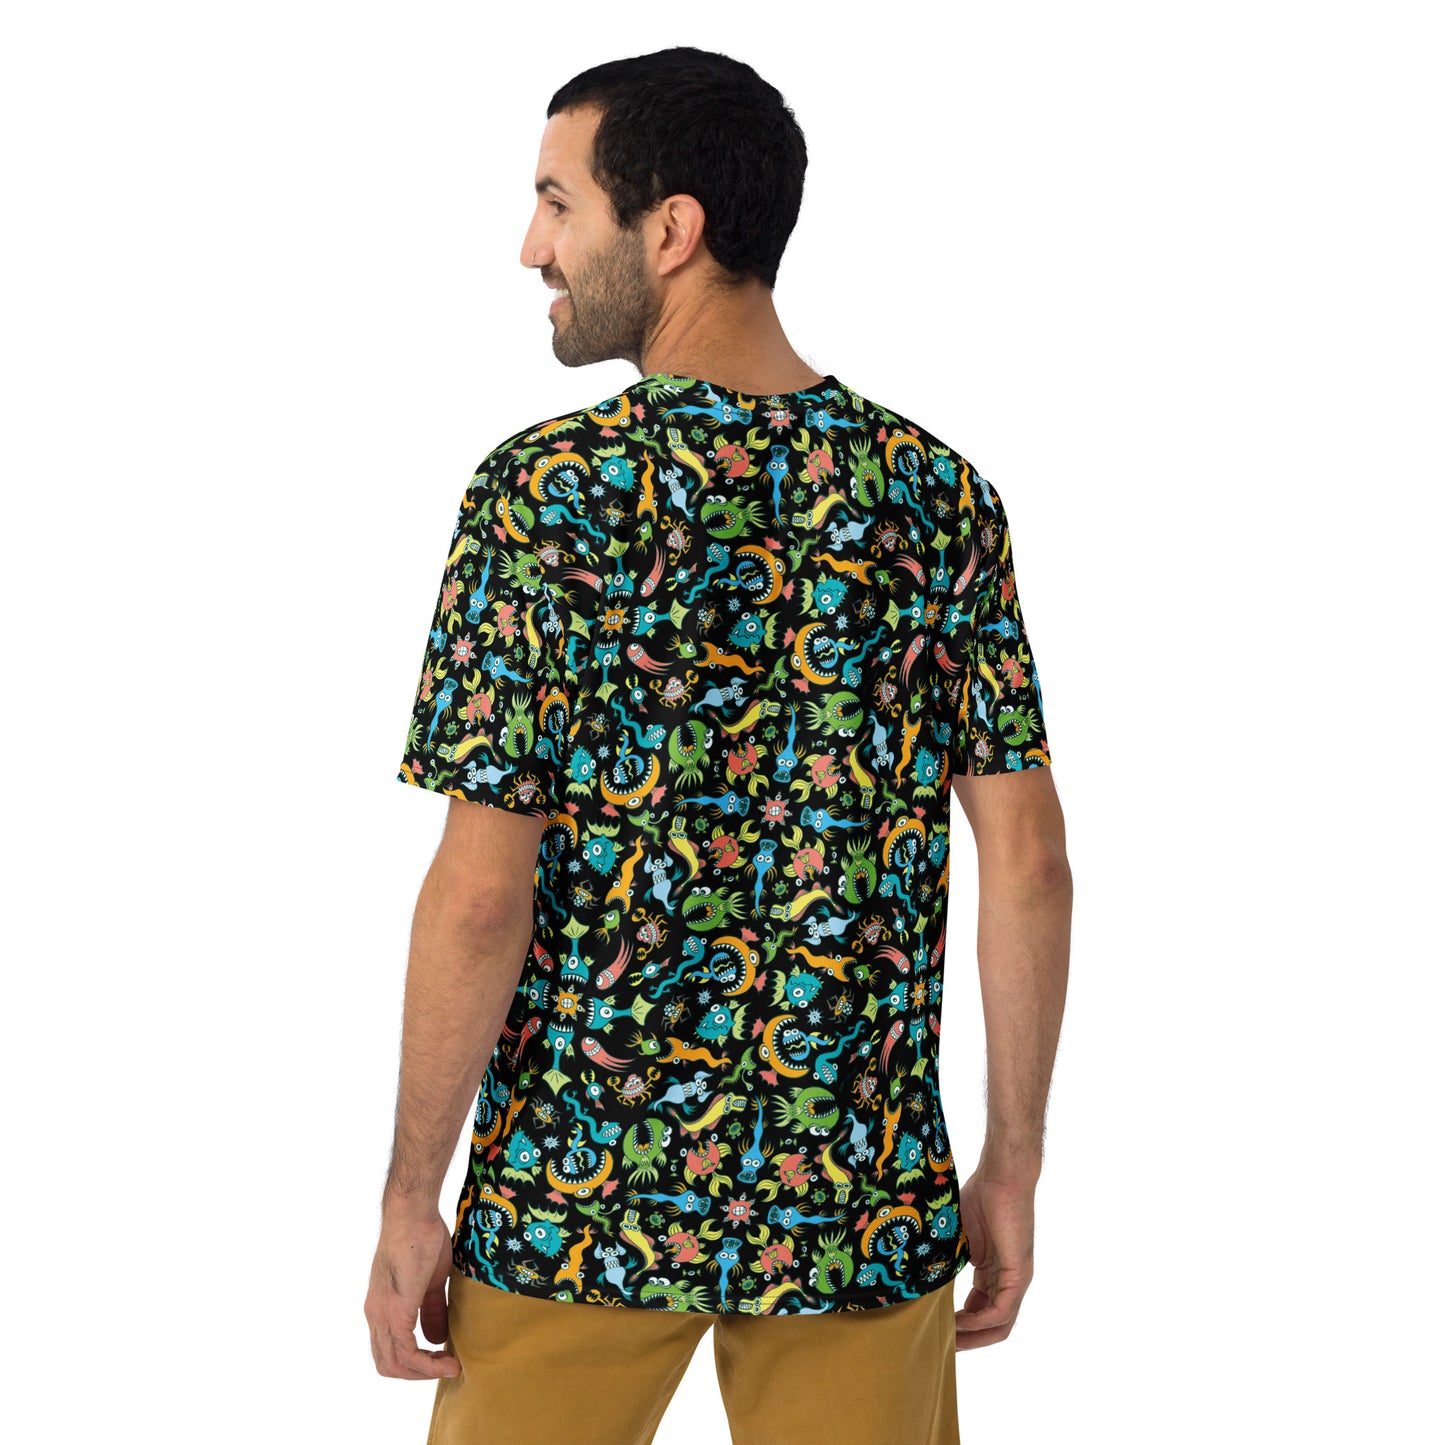 Sea creatures pattern design Men's T-shirt. Back view